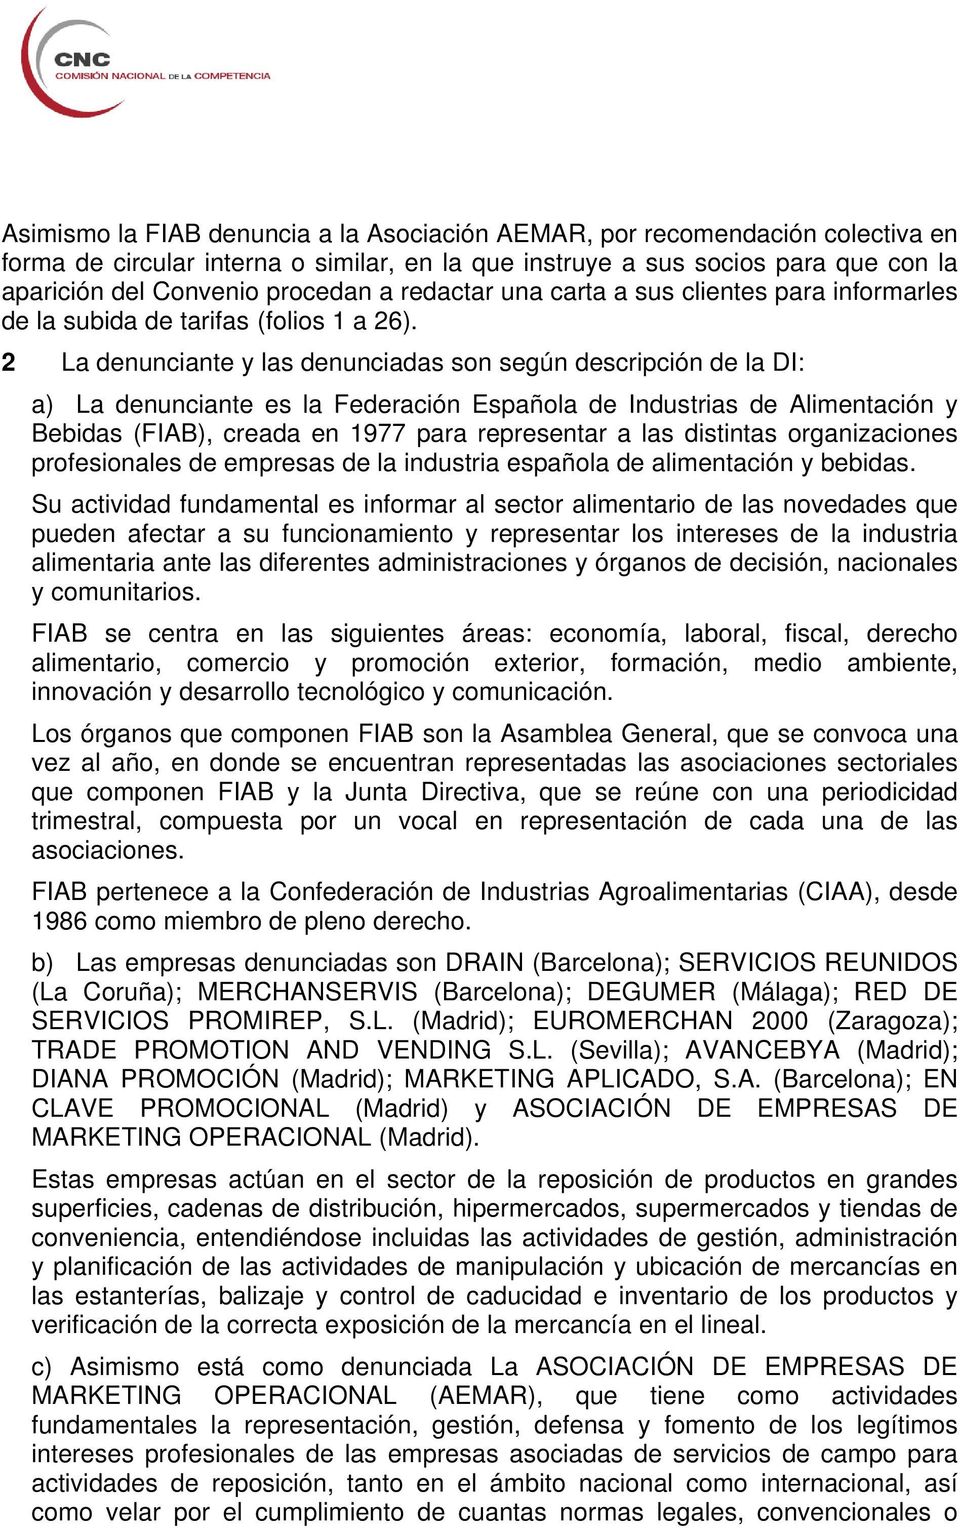 2 La denunciante y las denunciadas son según descripción de la DI: a) La denunciante es la Federación Española de Industrias de Alimentación y Bebidas (FIAB), creada en 1977 para representar a las